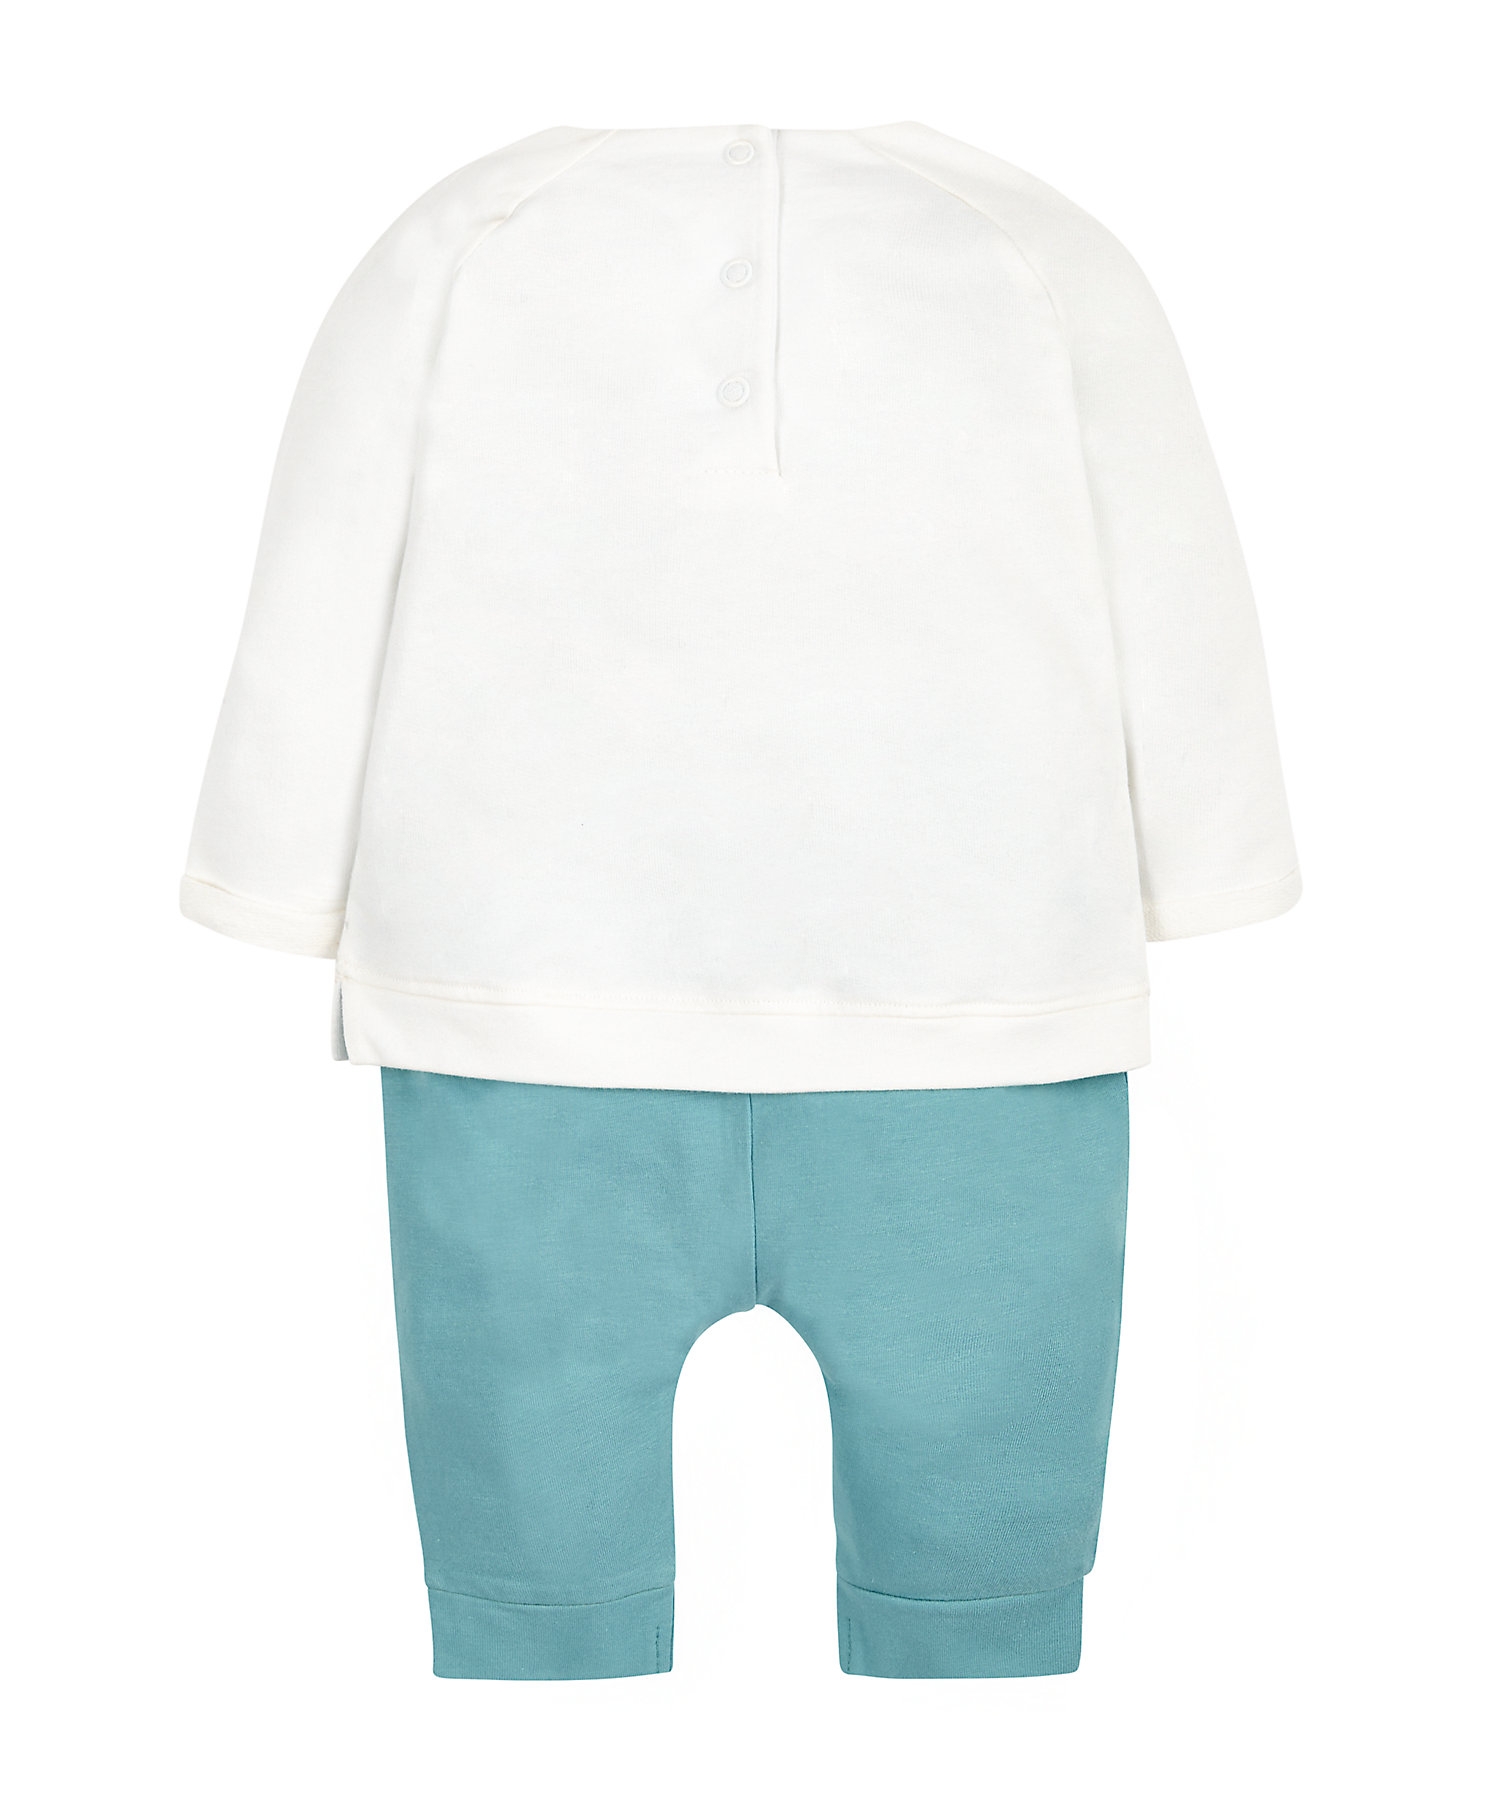 Mothercare | Girls Full Sleeves Pyjama Set 3D Mouse Ears - White 1